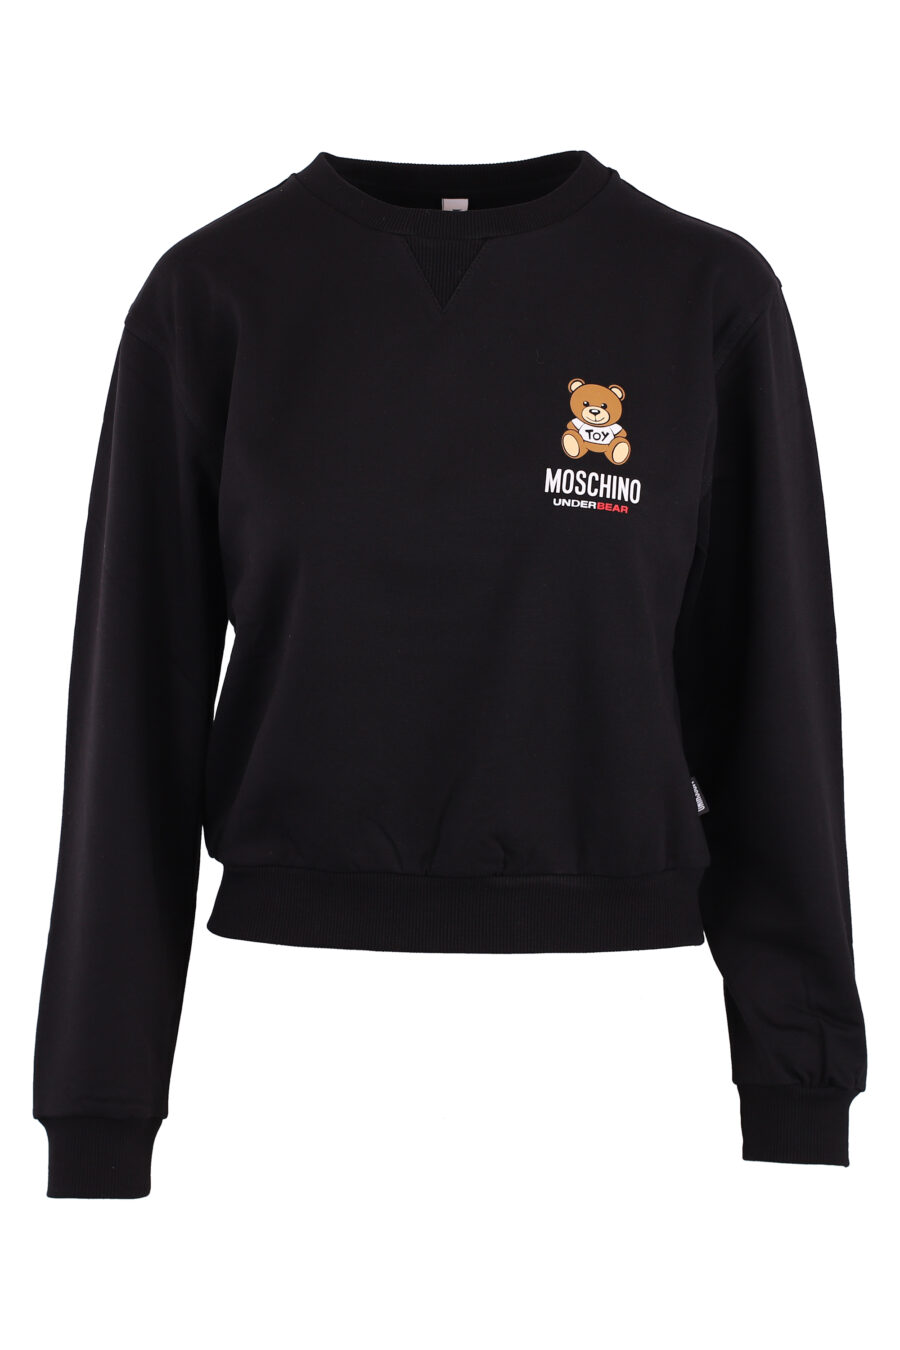 Schwarzes Sweatshirt mit kleinem Bärenlogo - IMG 6186